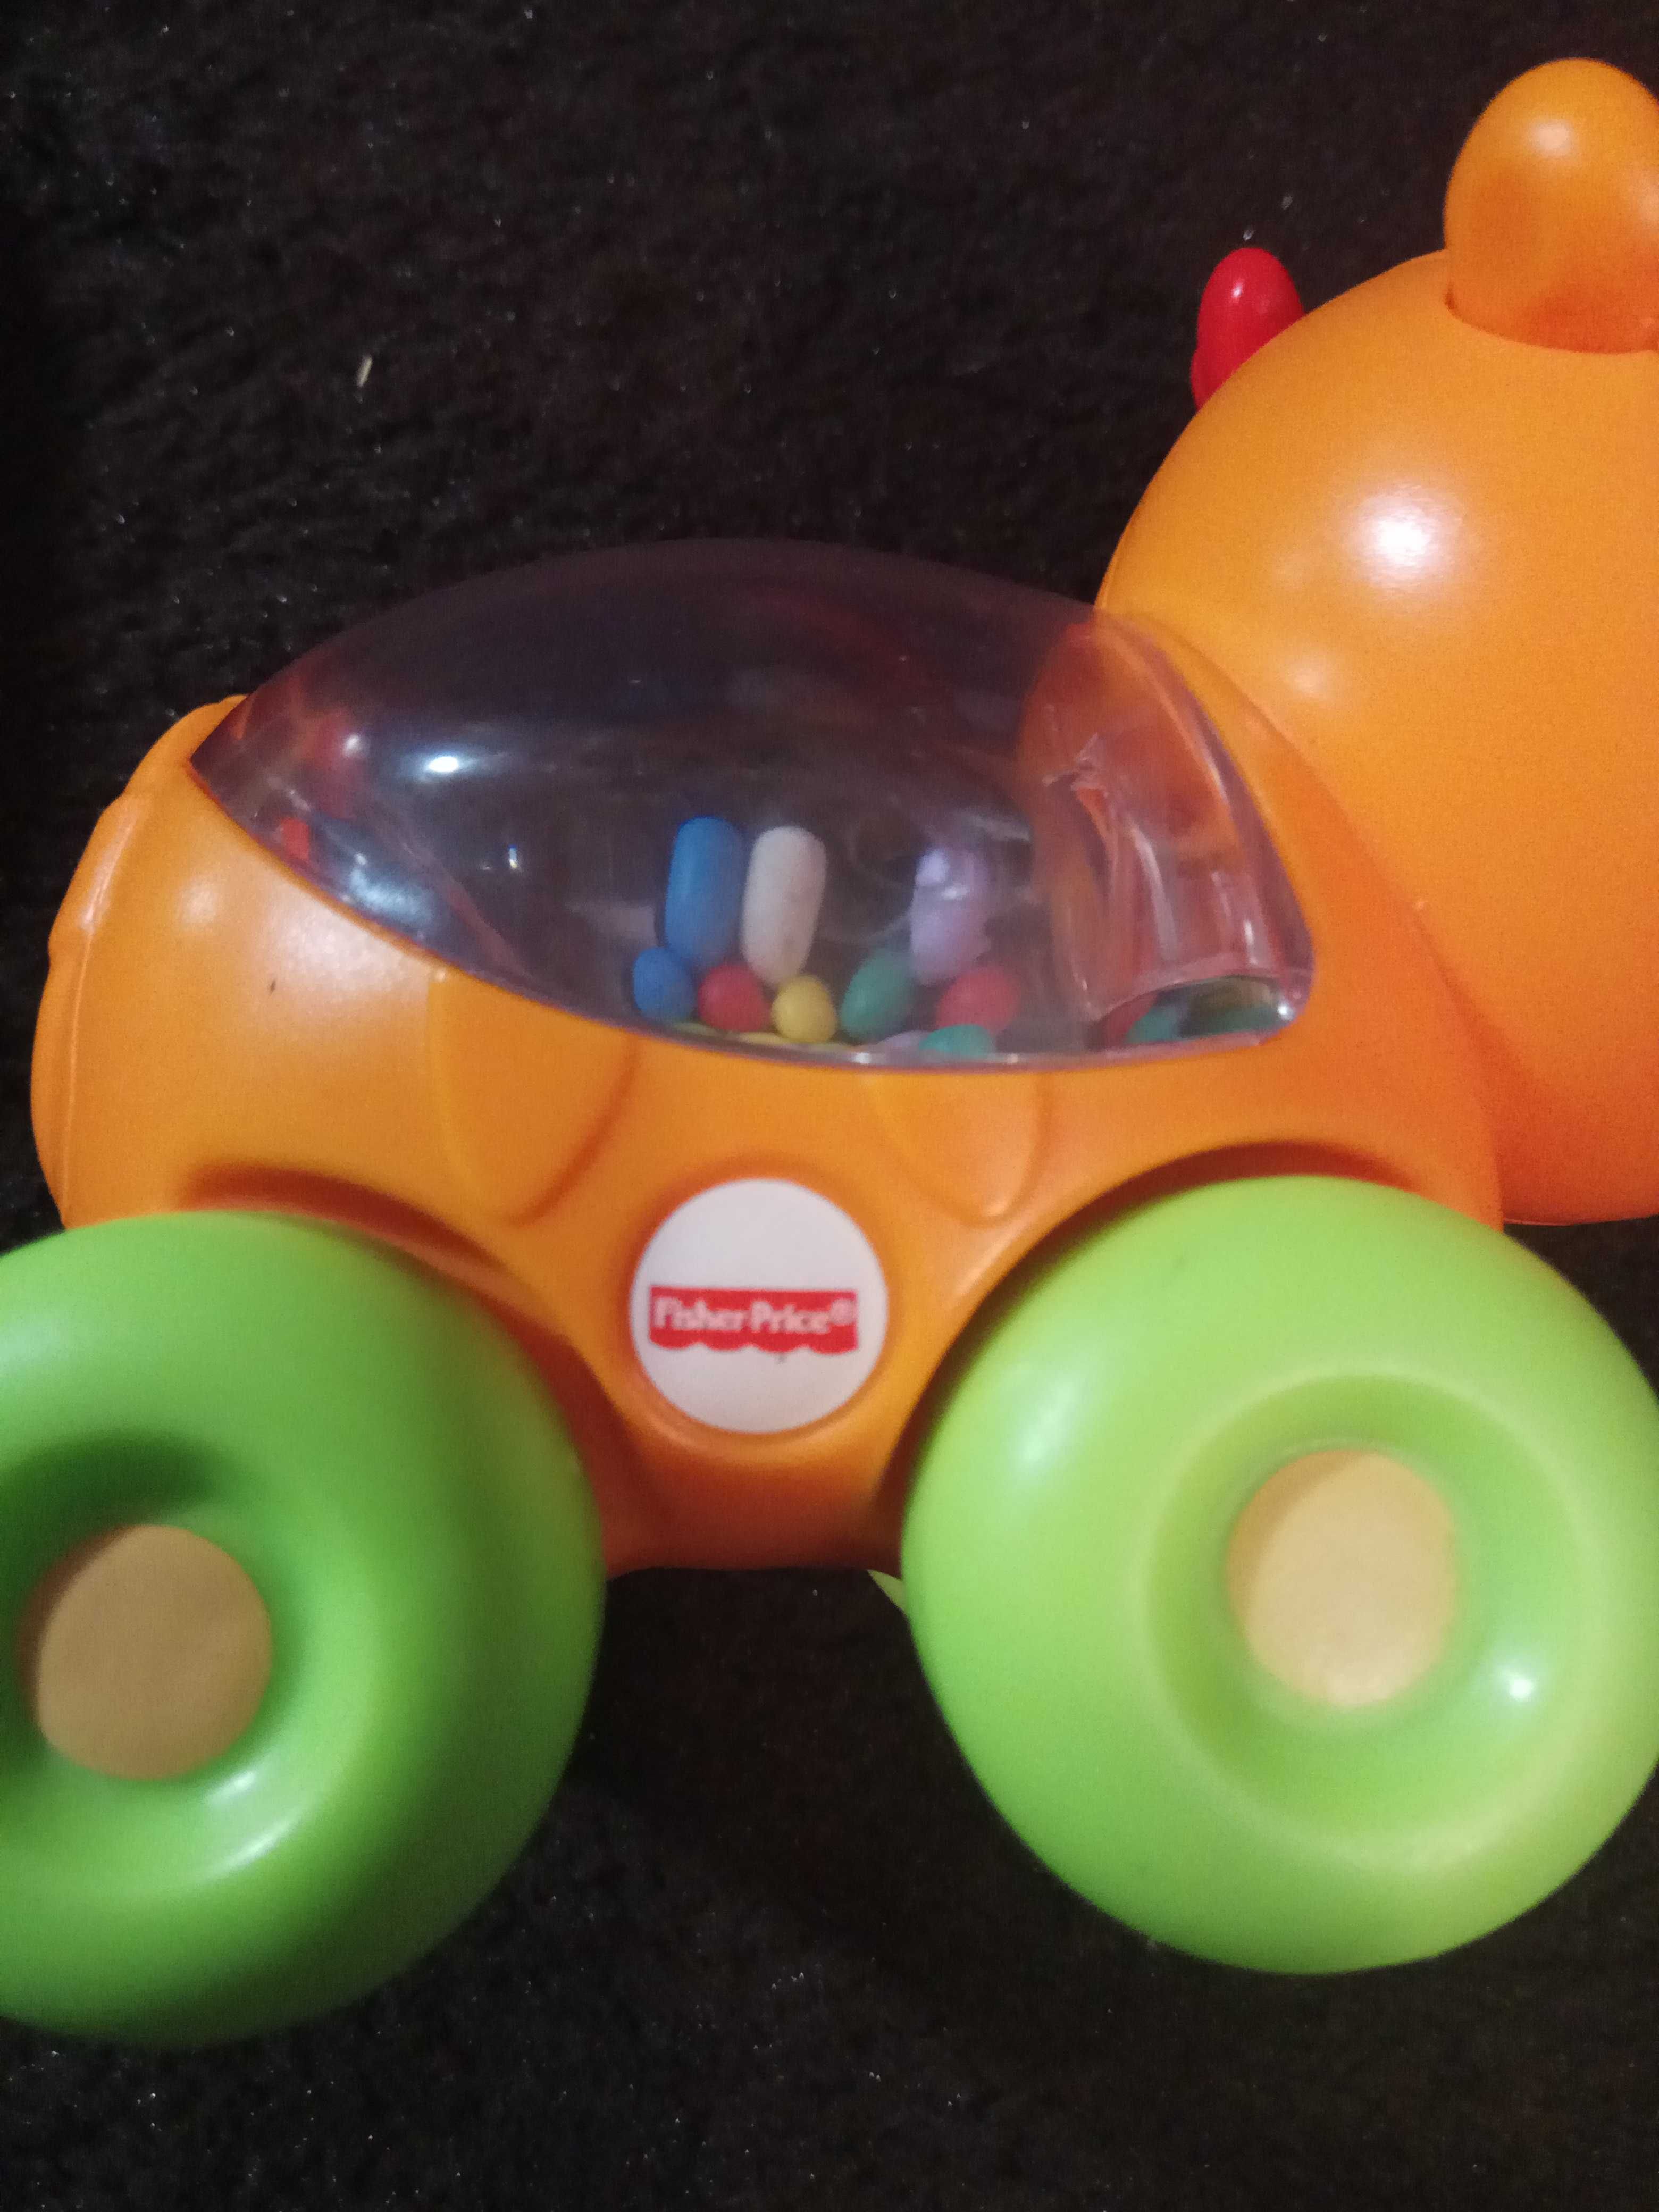 Интерактивный руль, машинка Nissan Dickei Toys и Кошка Fisher Price